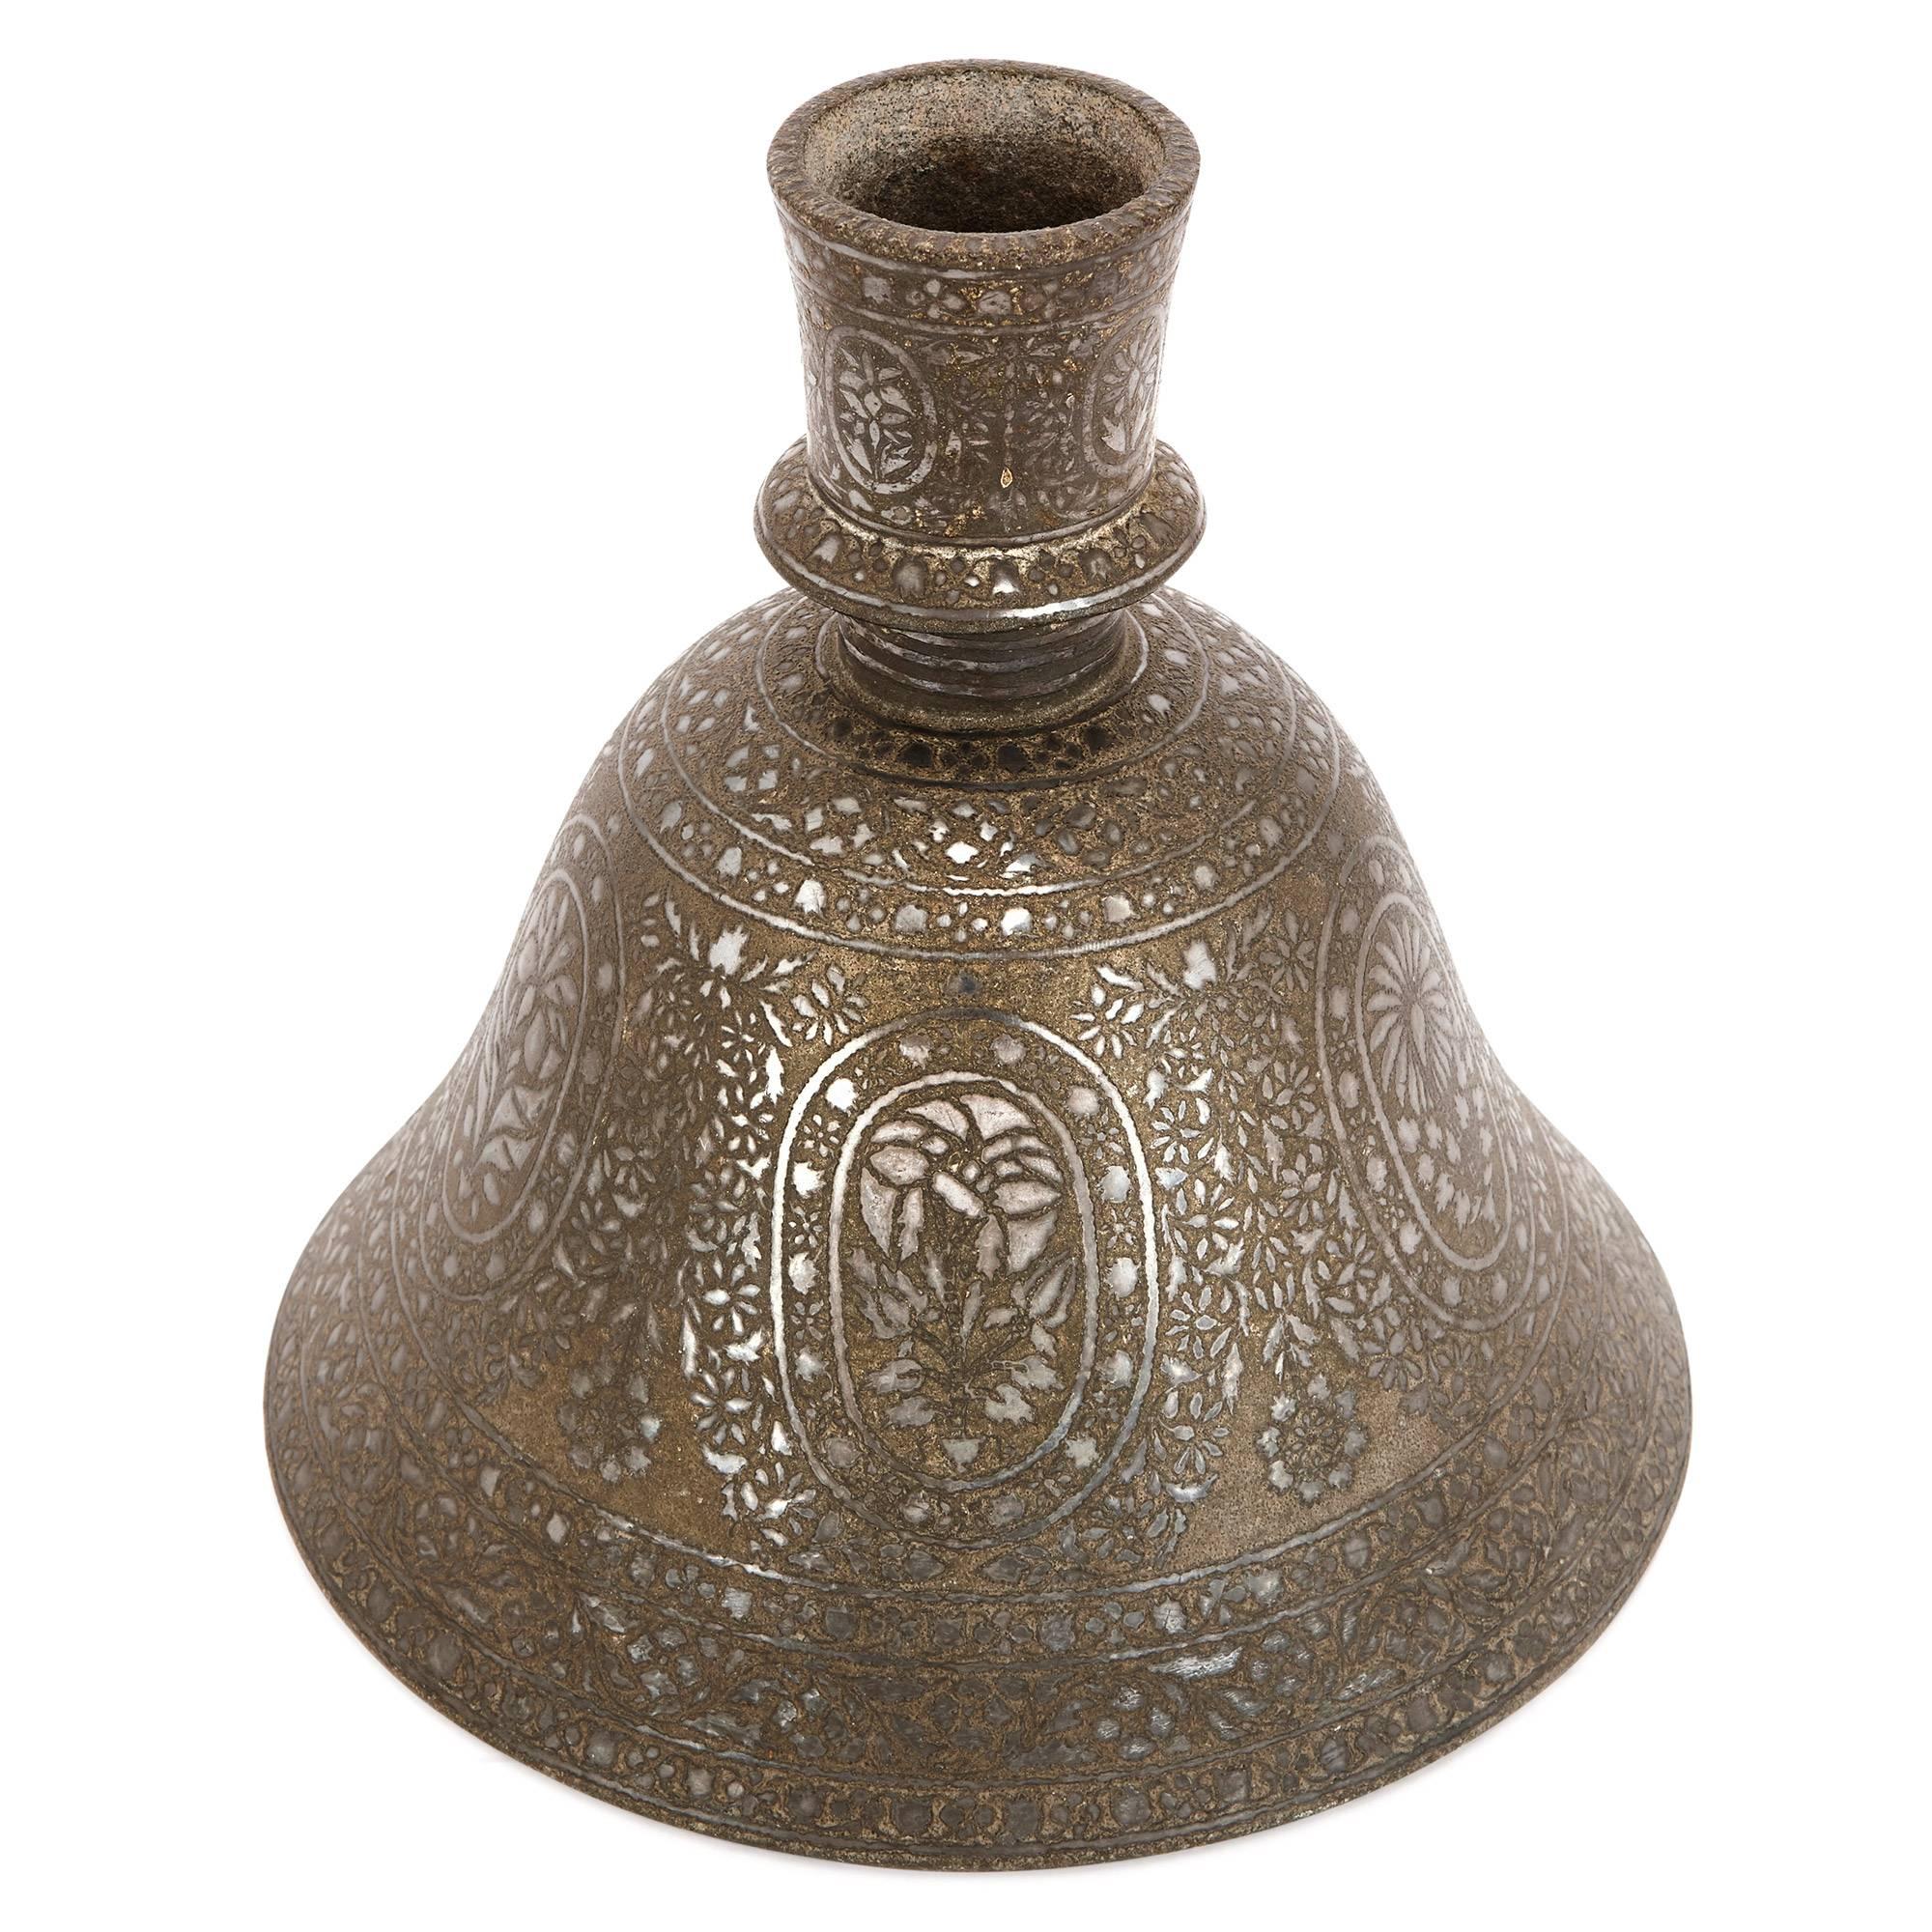 Cette pièce fascinante date du XIXe siècle en Inde, où elle était utilisée comme base d'eau pour un narguilé, ou pipe à shisha. Dans le narguilé traditionnel, la base de la pipe est normalement l'élément le plus décoratif de la pièce. Cette base est